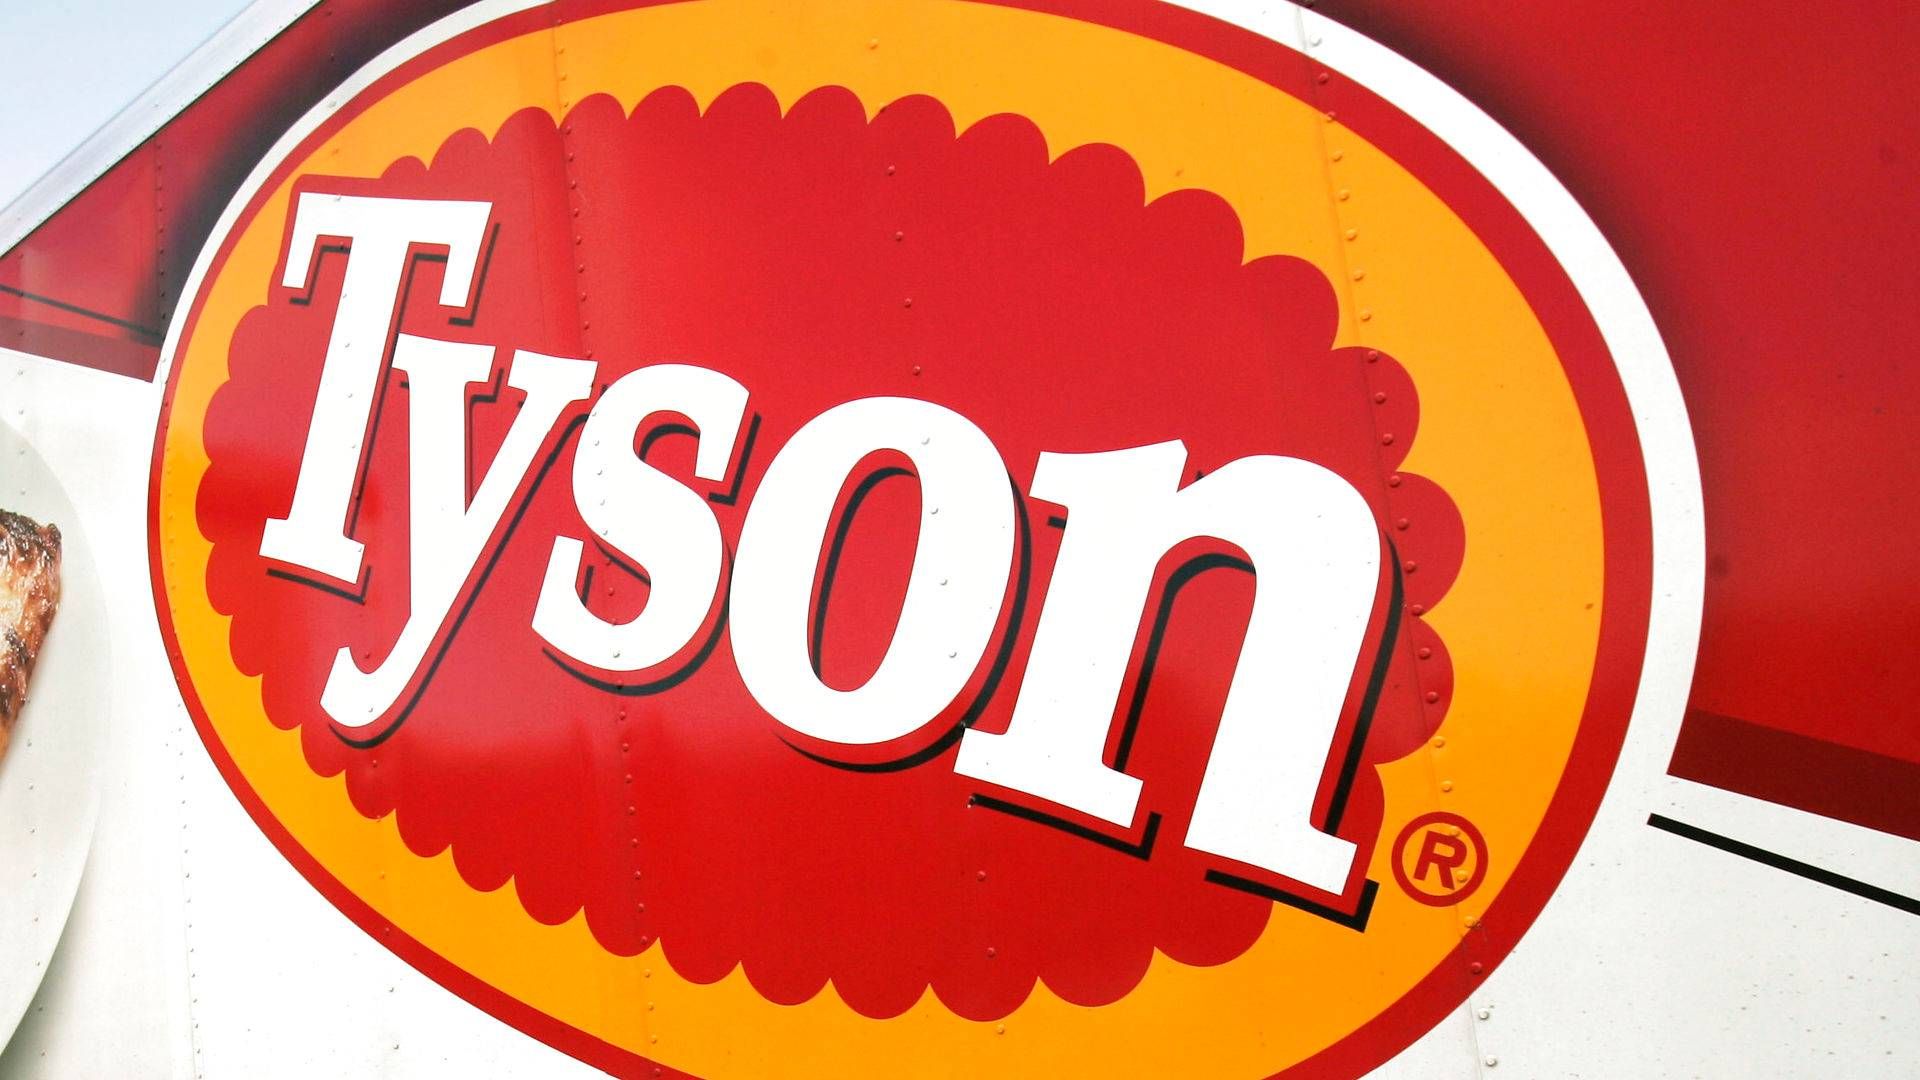 I sit seneste regnskab kunne Tyson Foods fremlægge en omsætning på 42,2 mia. dollar, svarende til 285 mia. kr. | Foto: Danny Johnston/AP/Ritzau Scanpix